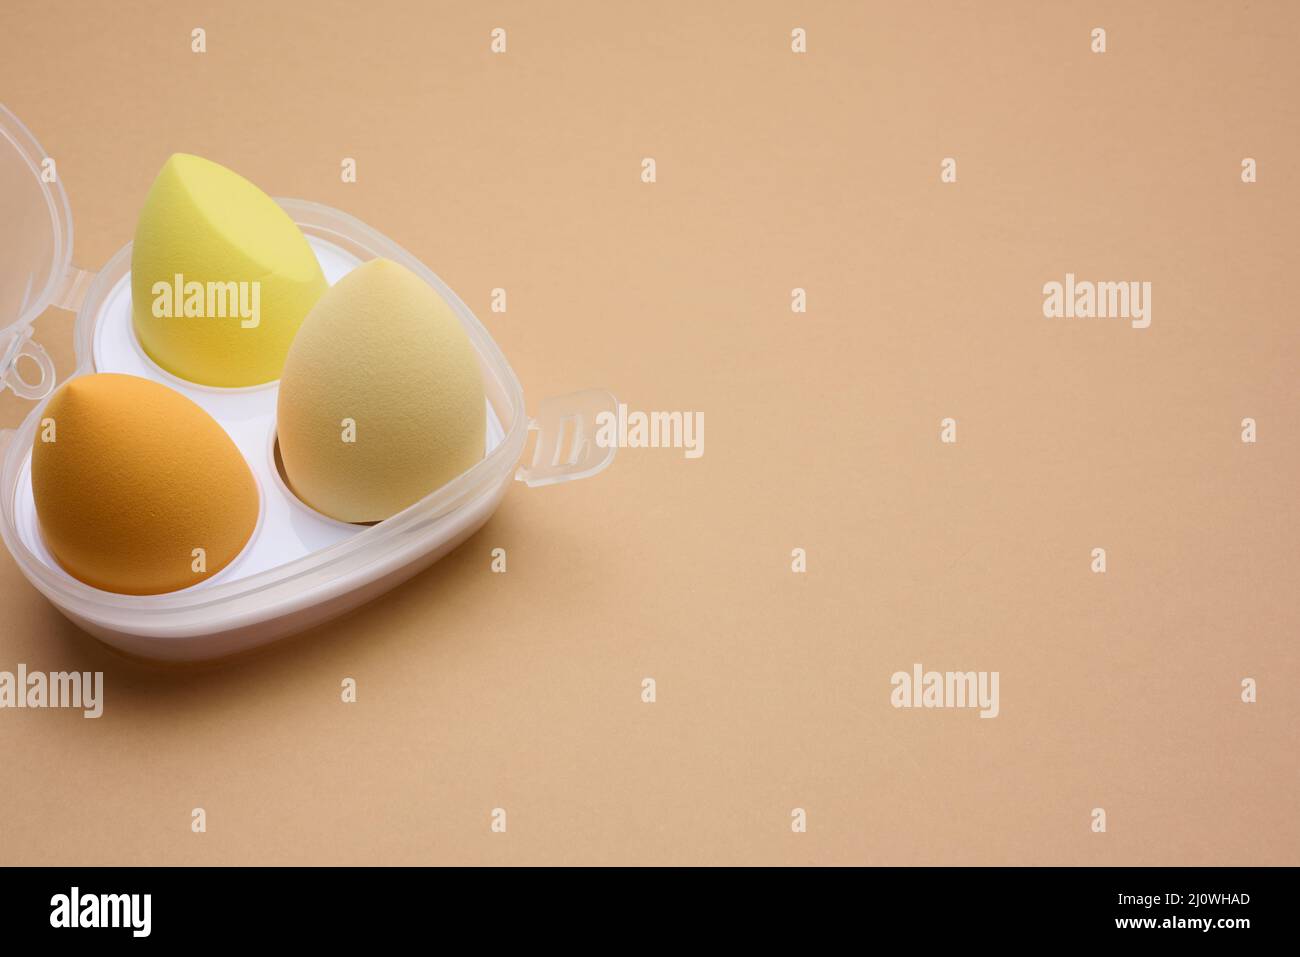 Spugne ovali nuove a forma di uovo per cosmetici e fondazioni, vista dall'alto Foto Stock